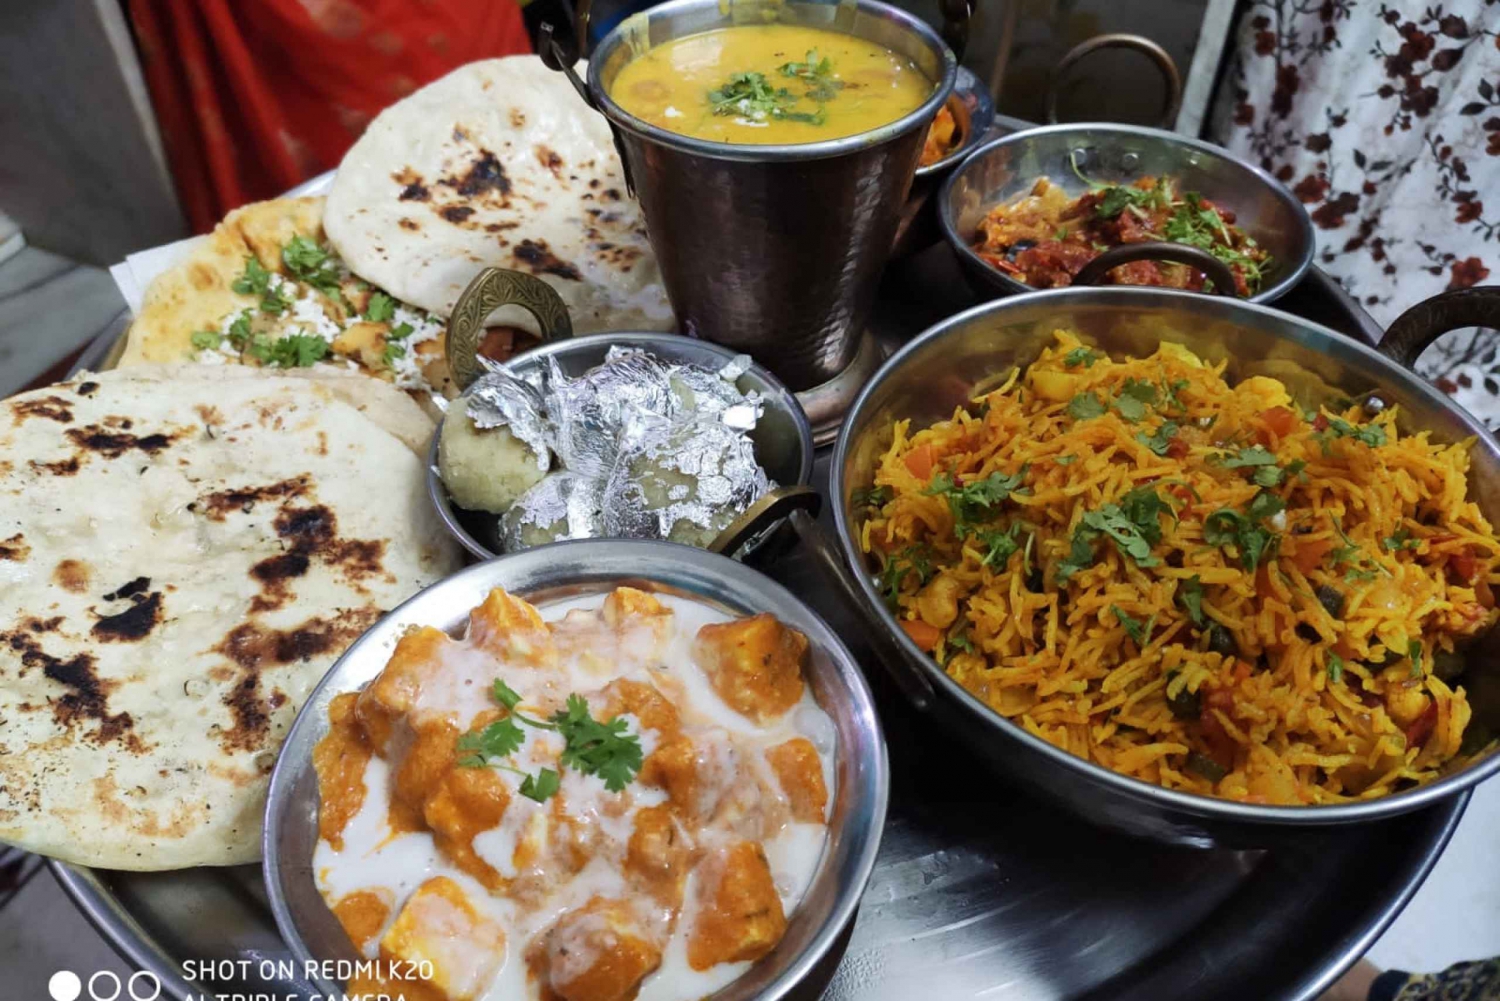 Jodhpur: 9-retters matlagingsopplevelse med henting og bringing